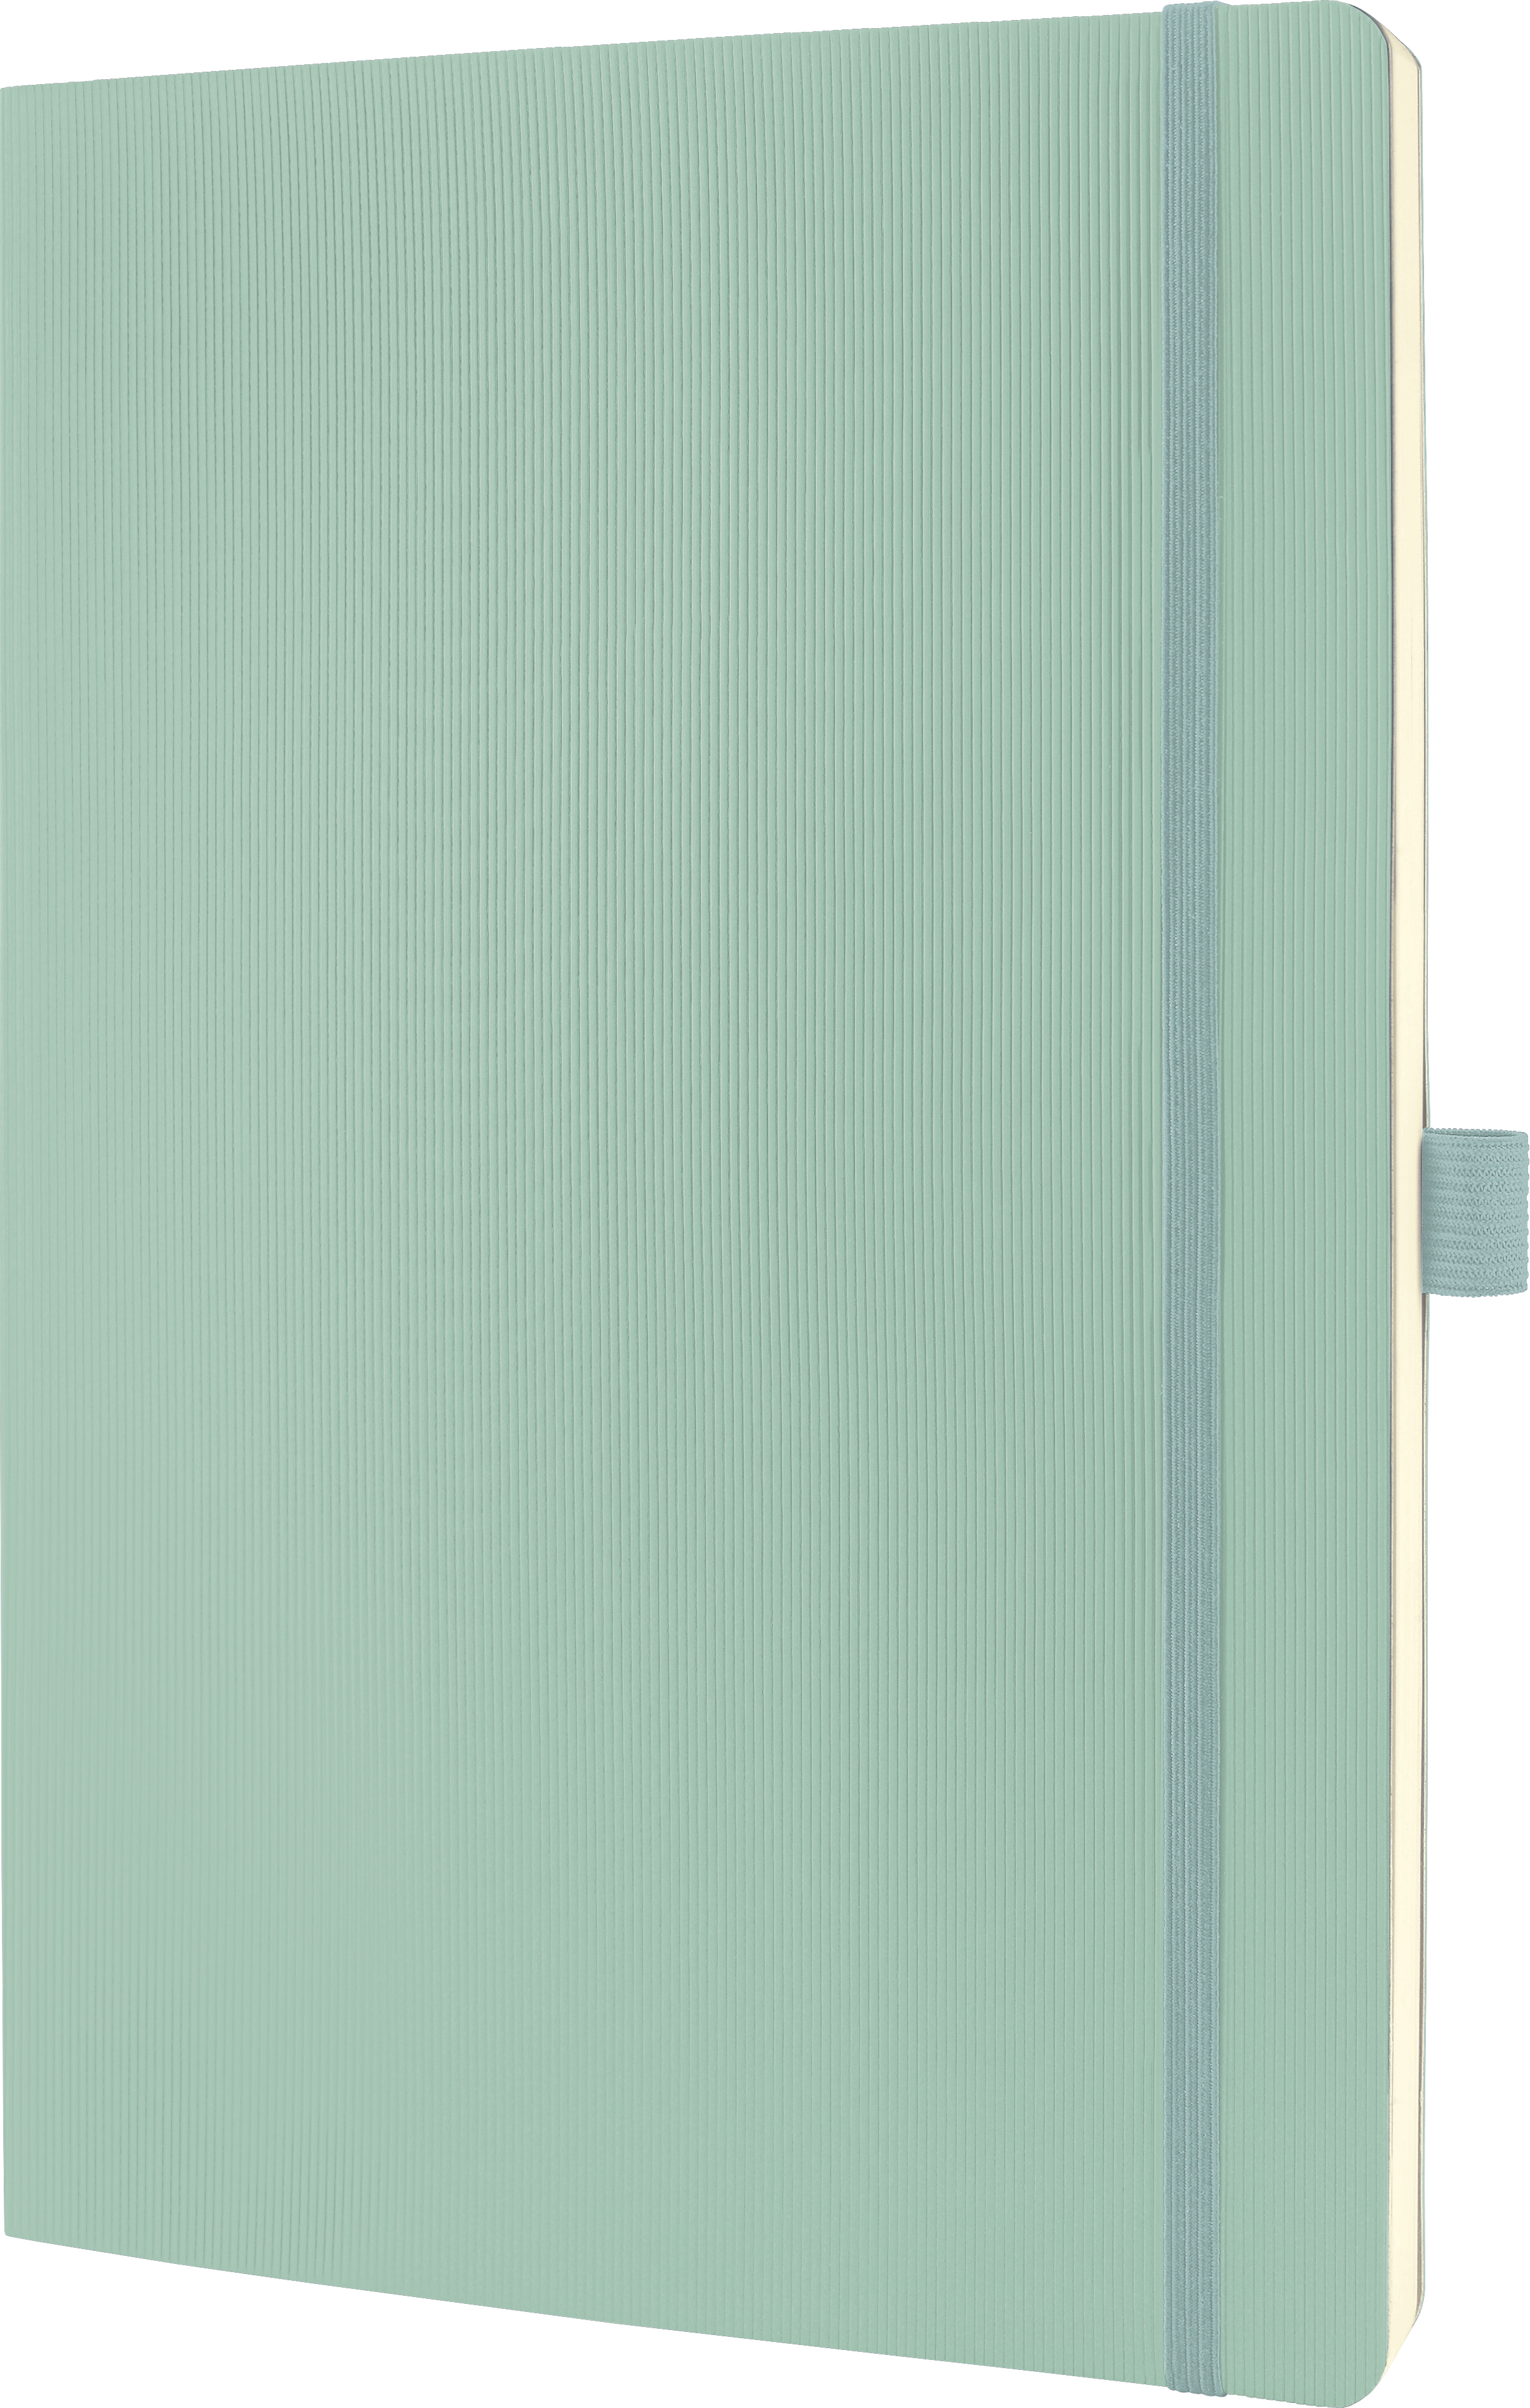 CONCEPTUM Carnet de notes A4 CO335 mint green, ligné 194 pages